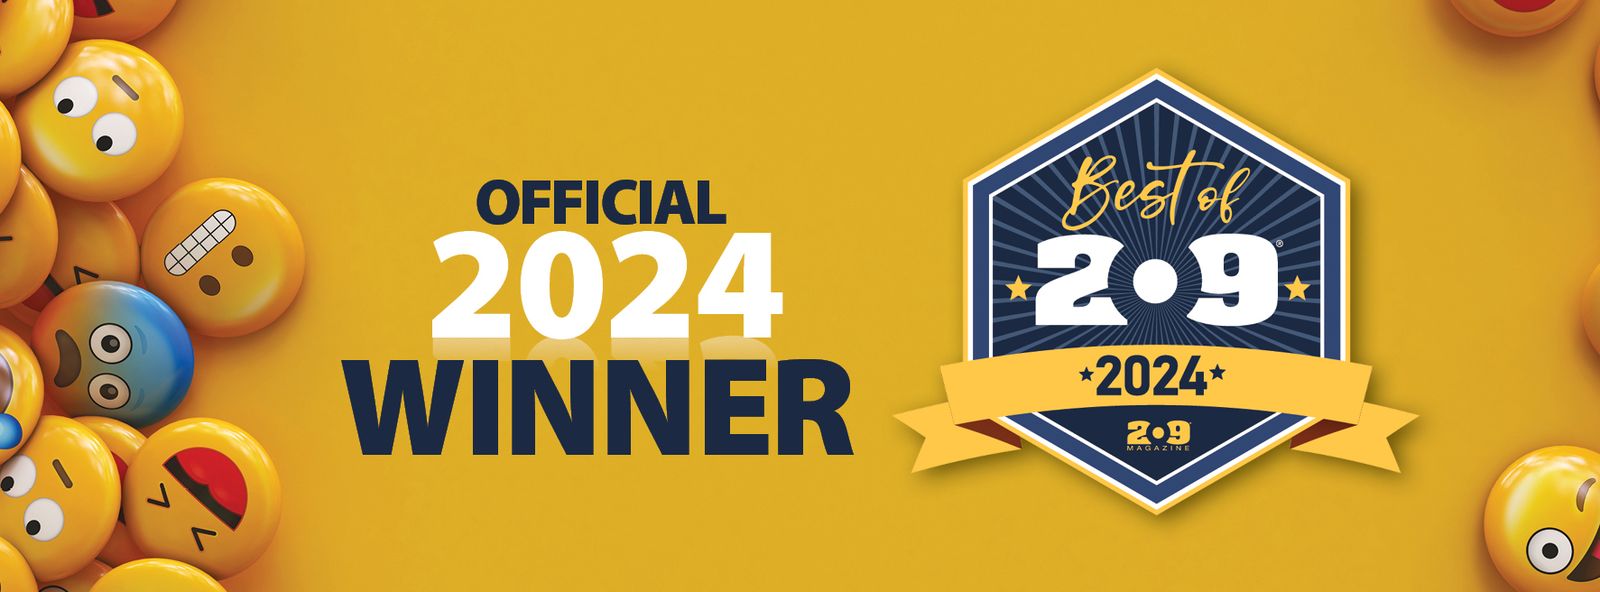 official 2024 winner badge